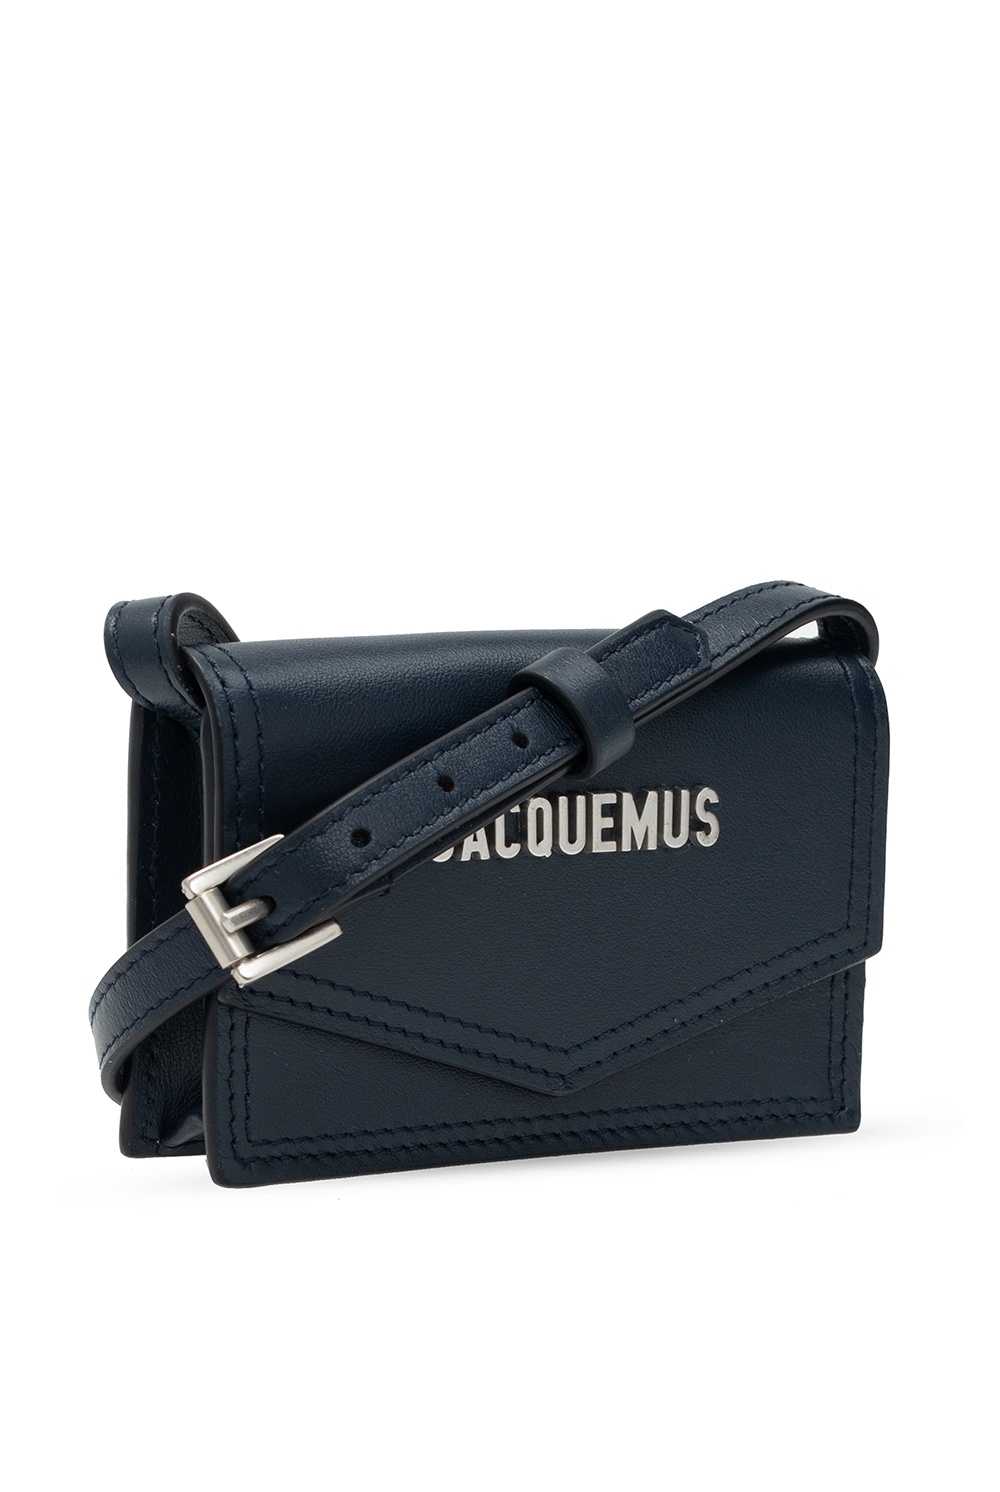 Jacquemus ‘Le Porte Azur’ shoulder bag